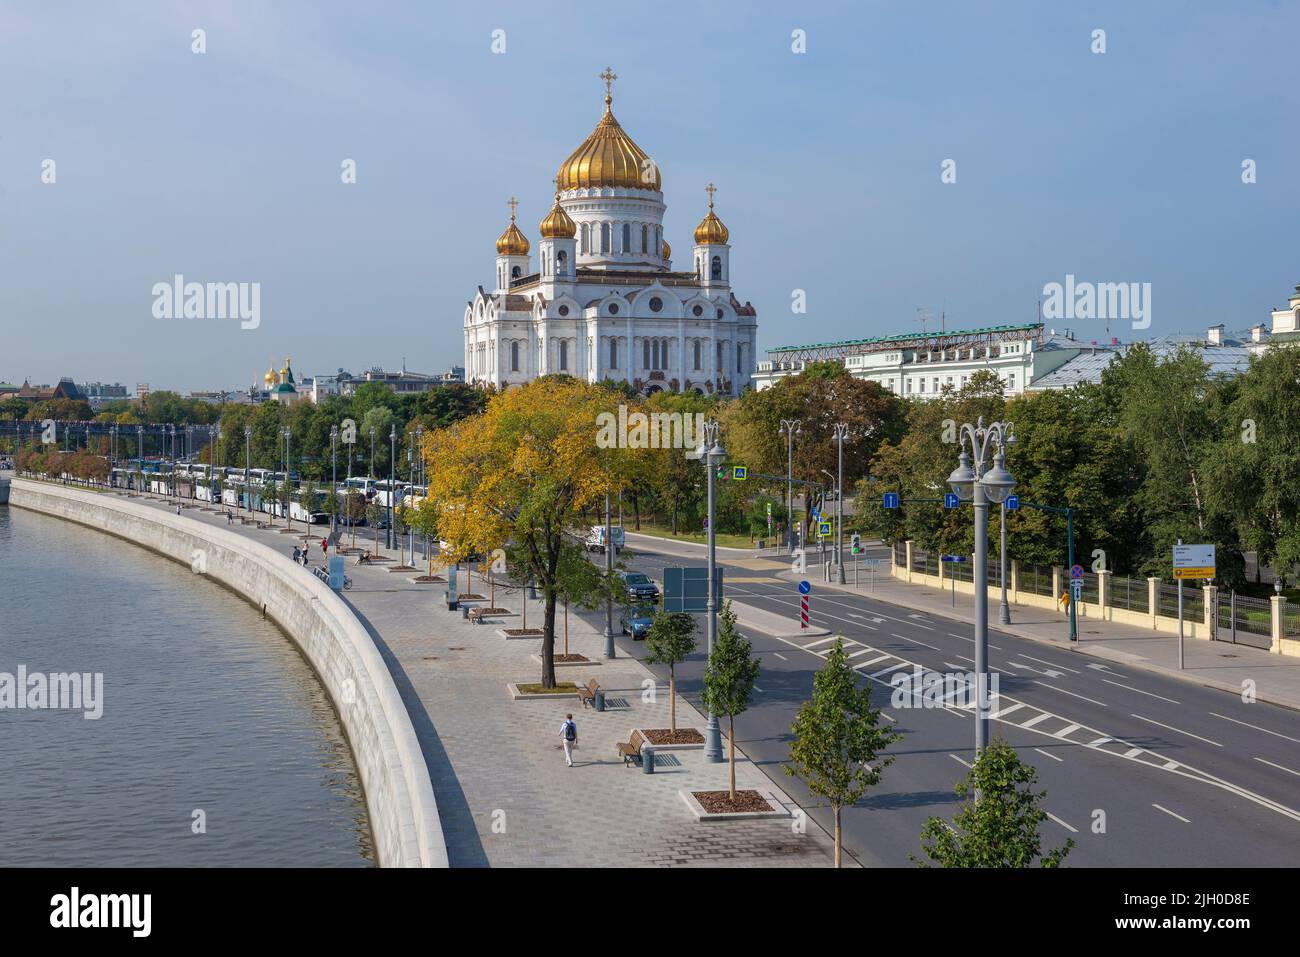 MOSKAU, RUSSLAND - 01. SEPTEMBER 2018: Blick auf die Kathedrale Christi des Erlösers und den Pretschistenskaya-Damm an einem sonnigen Septembertag Stockfoto